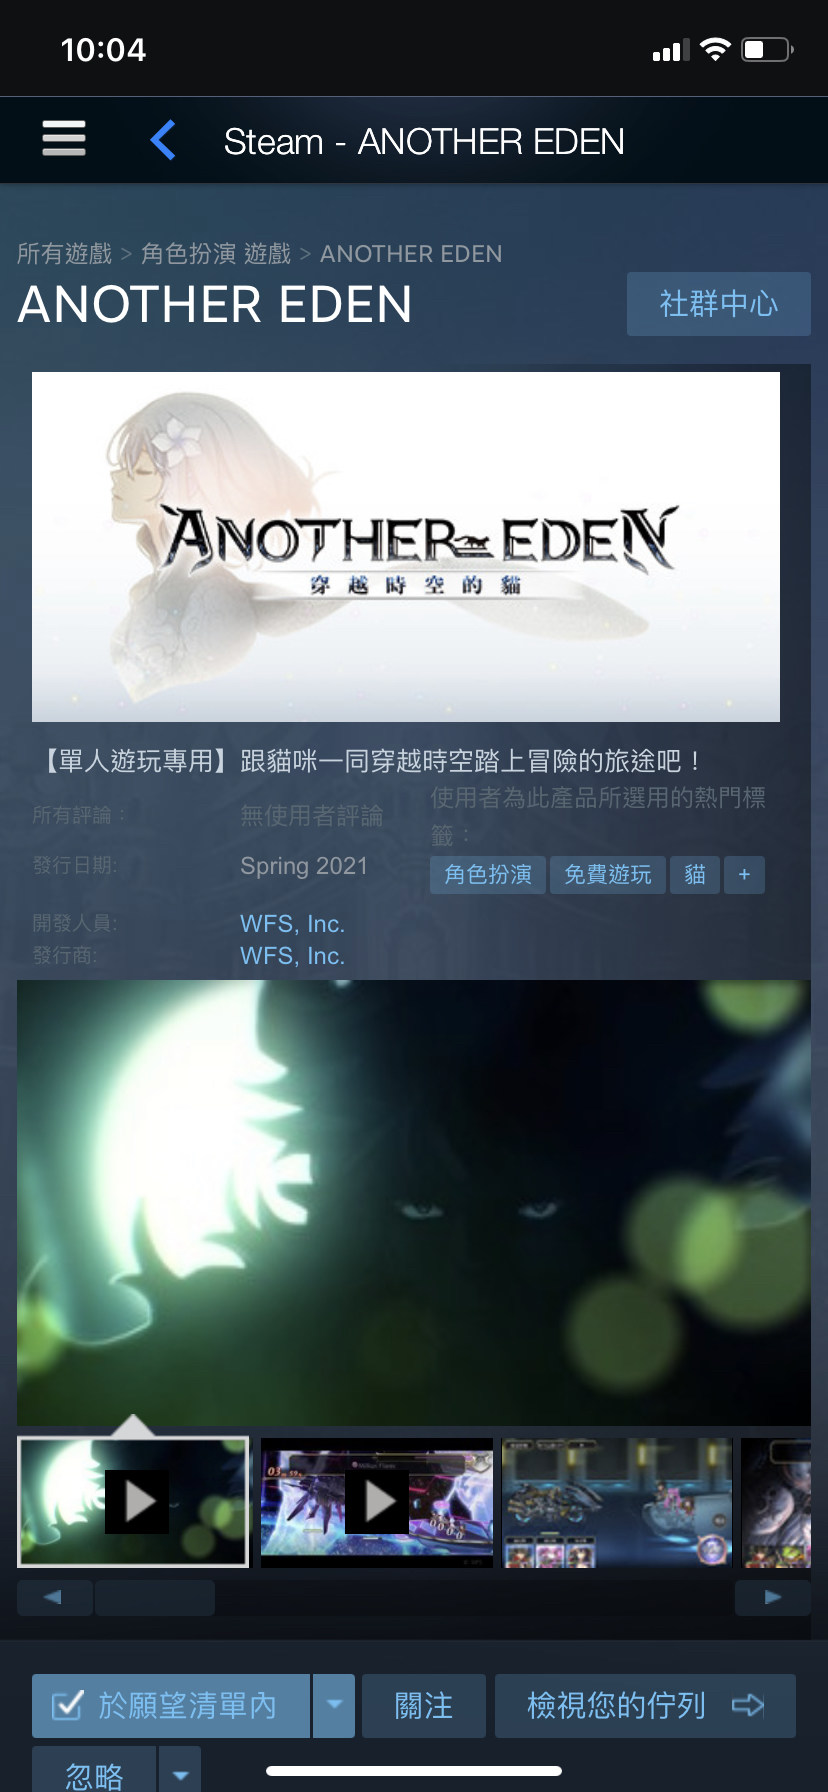 ANOTHER EDEN on Steam